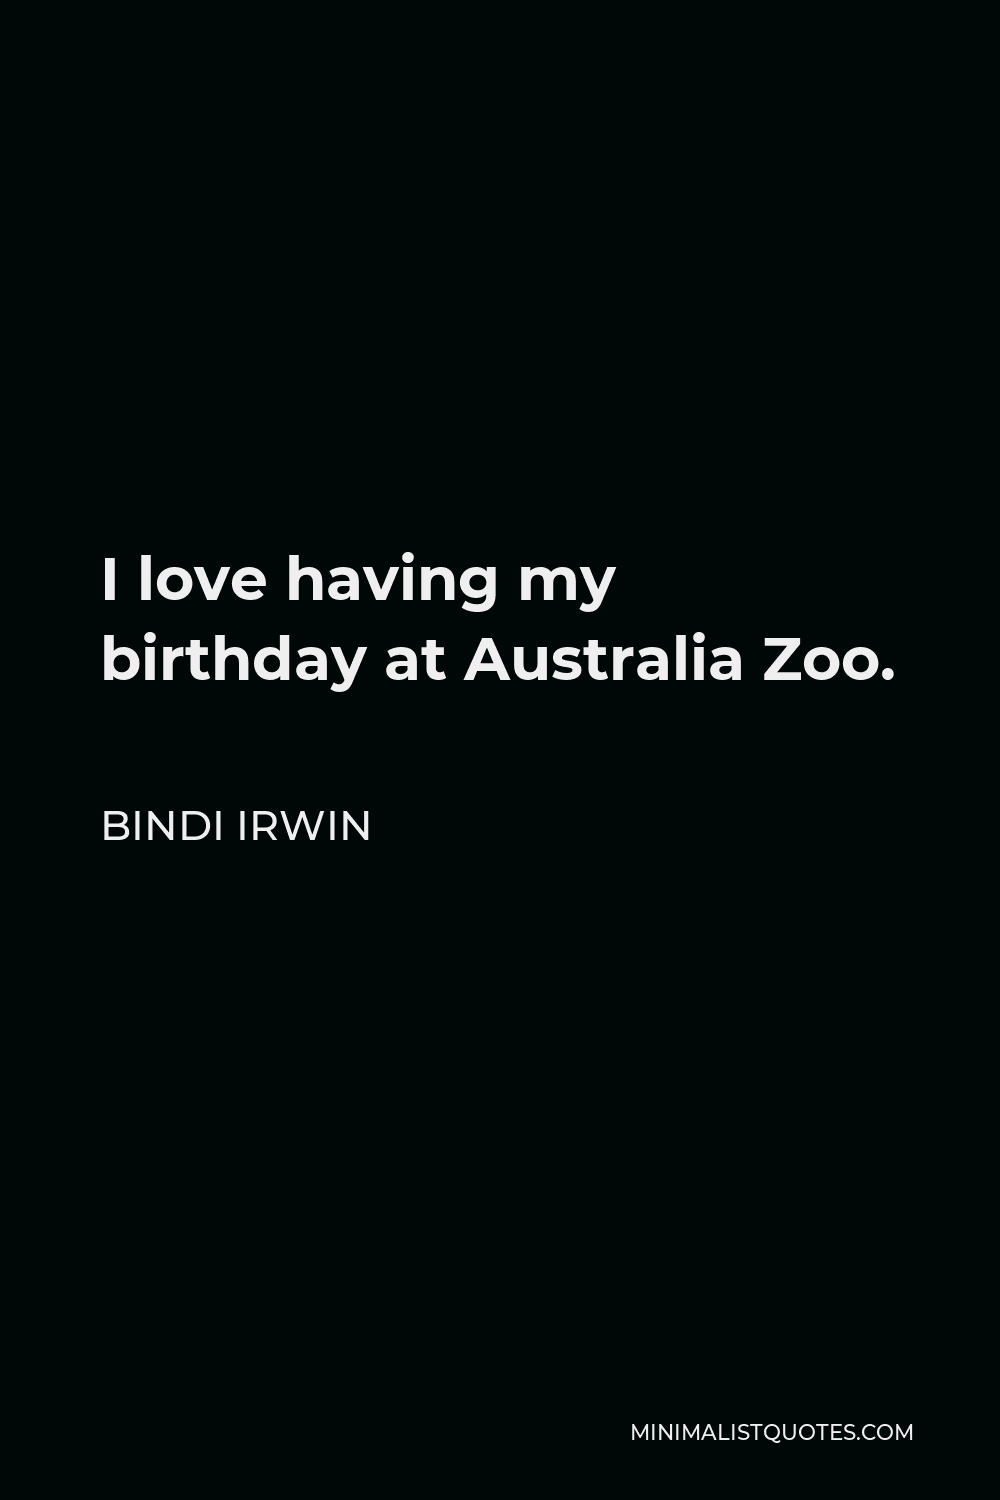 Bindi Irwin Quote - I love having my birthday at Australia Zoo.